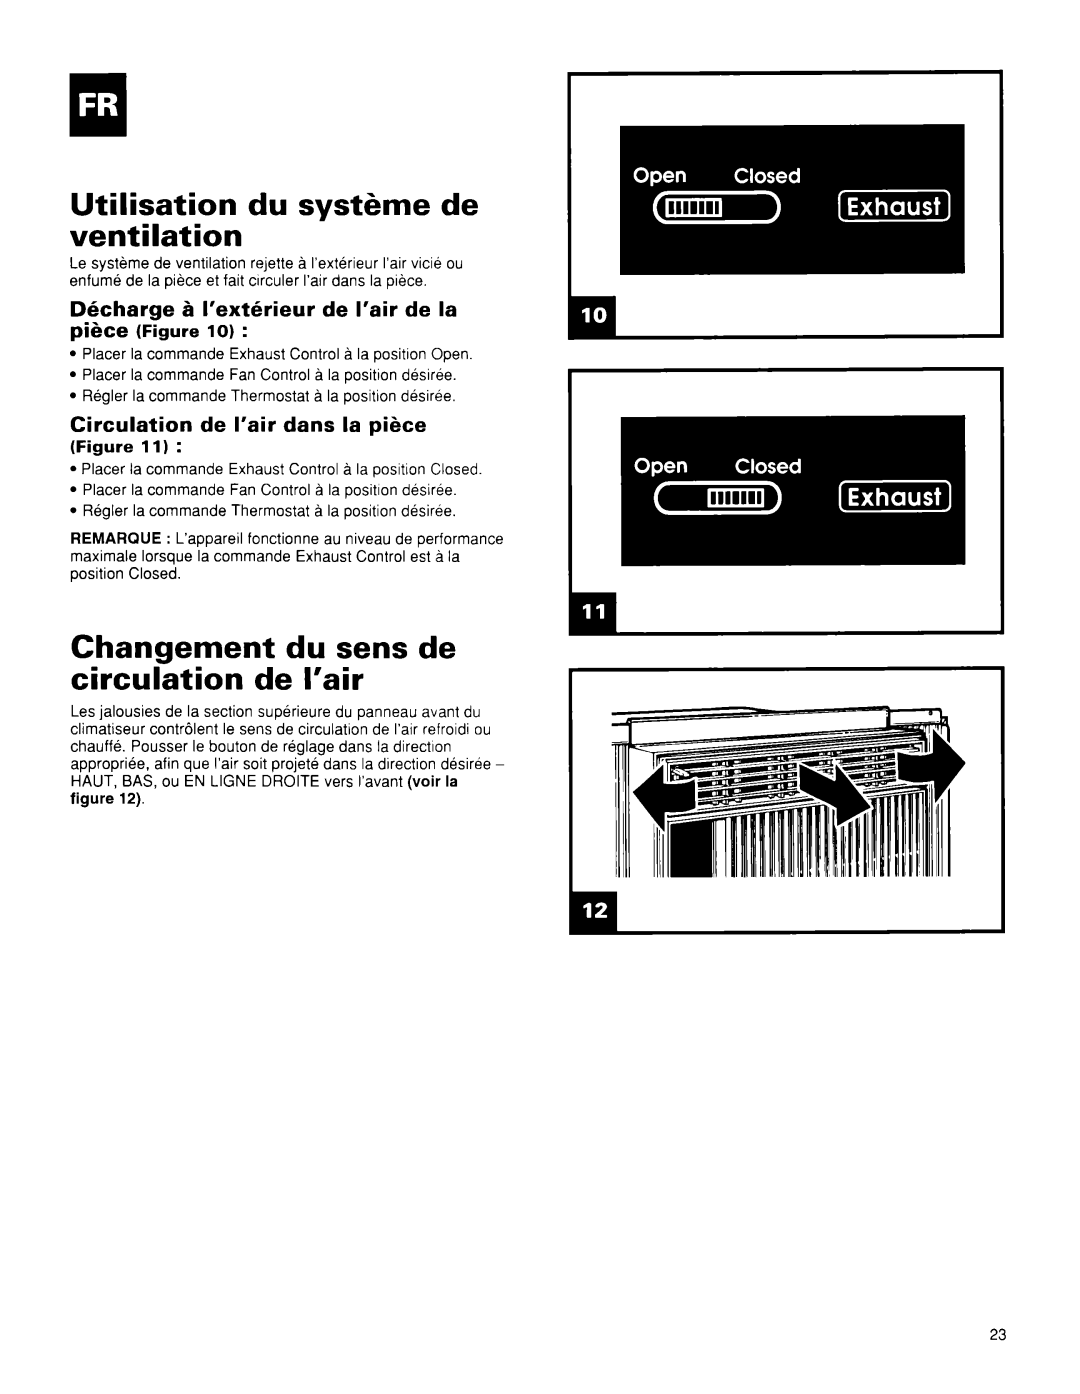 Whirlpool BHAC0600BS0 manual Utilisation du syst&me de ventilation, Changement du sens de circulation de I’air 